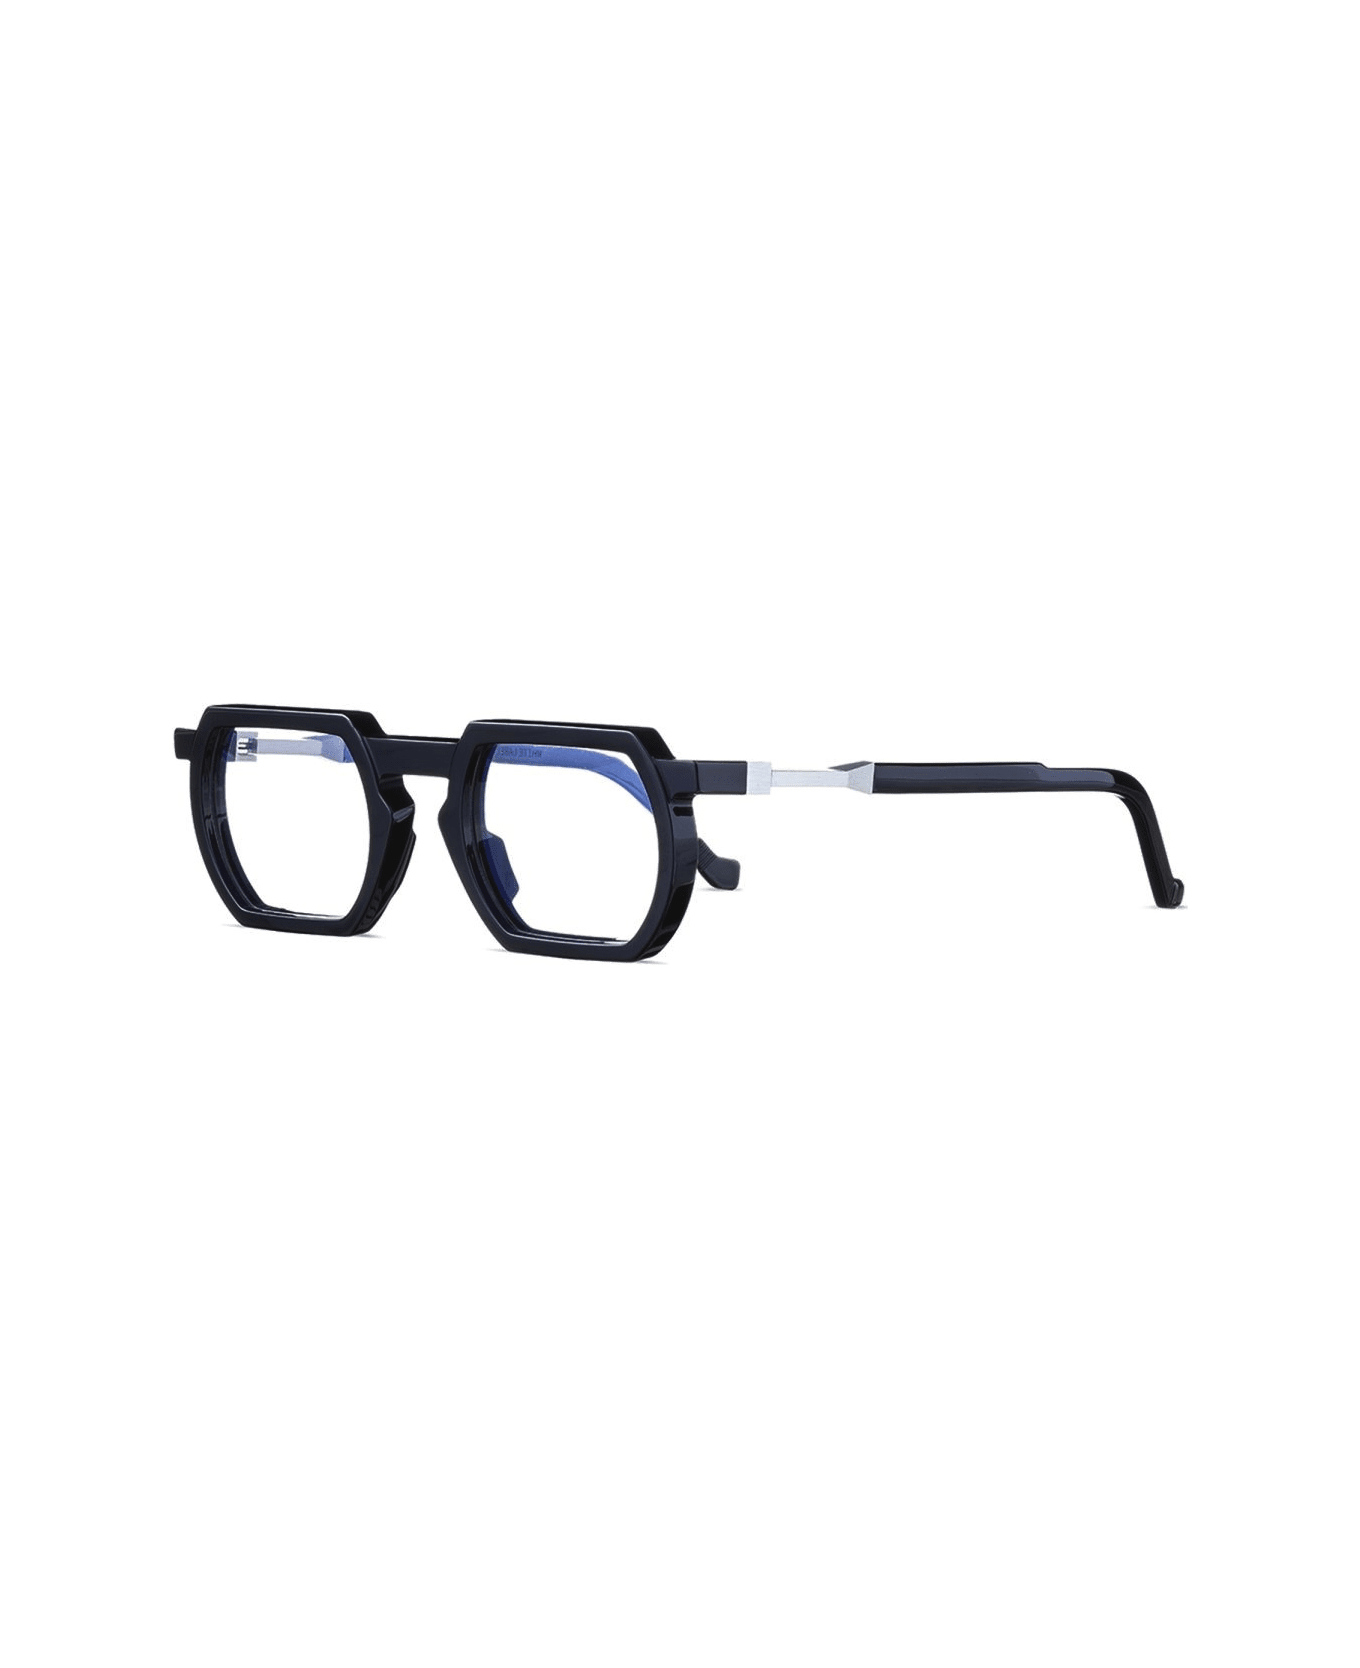 VAVA Wl0031 White Label Glasses - Nero